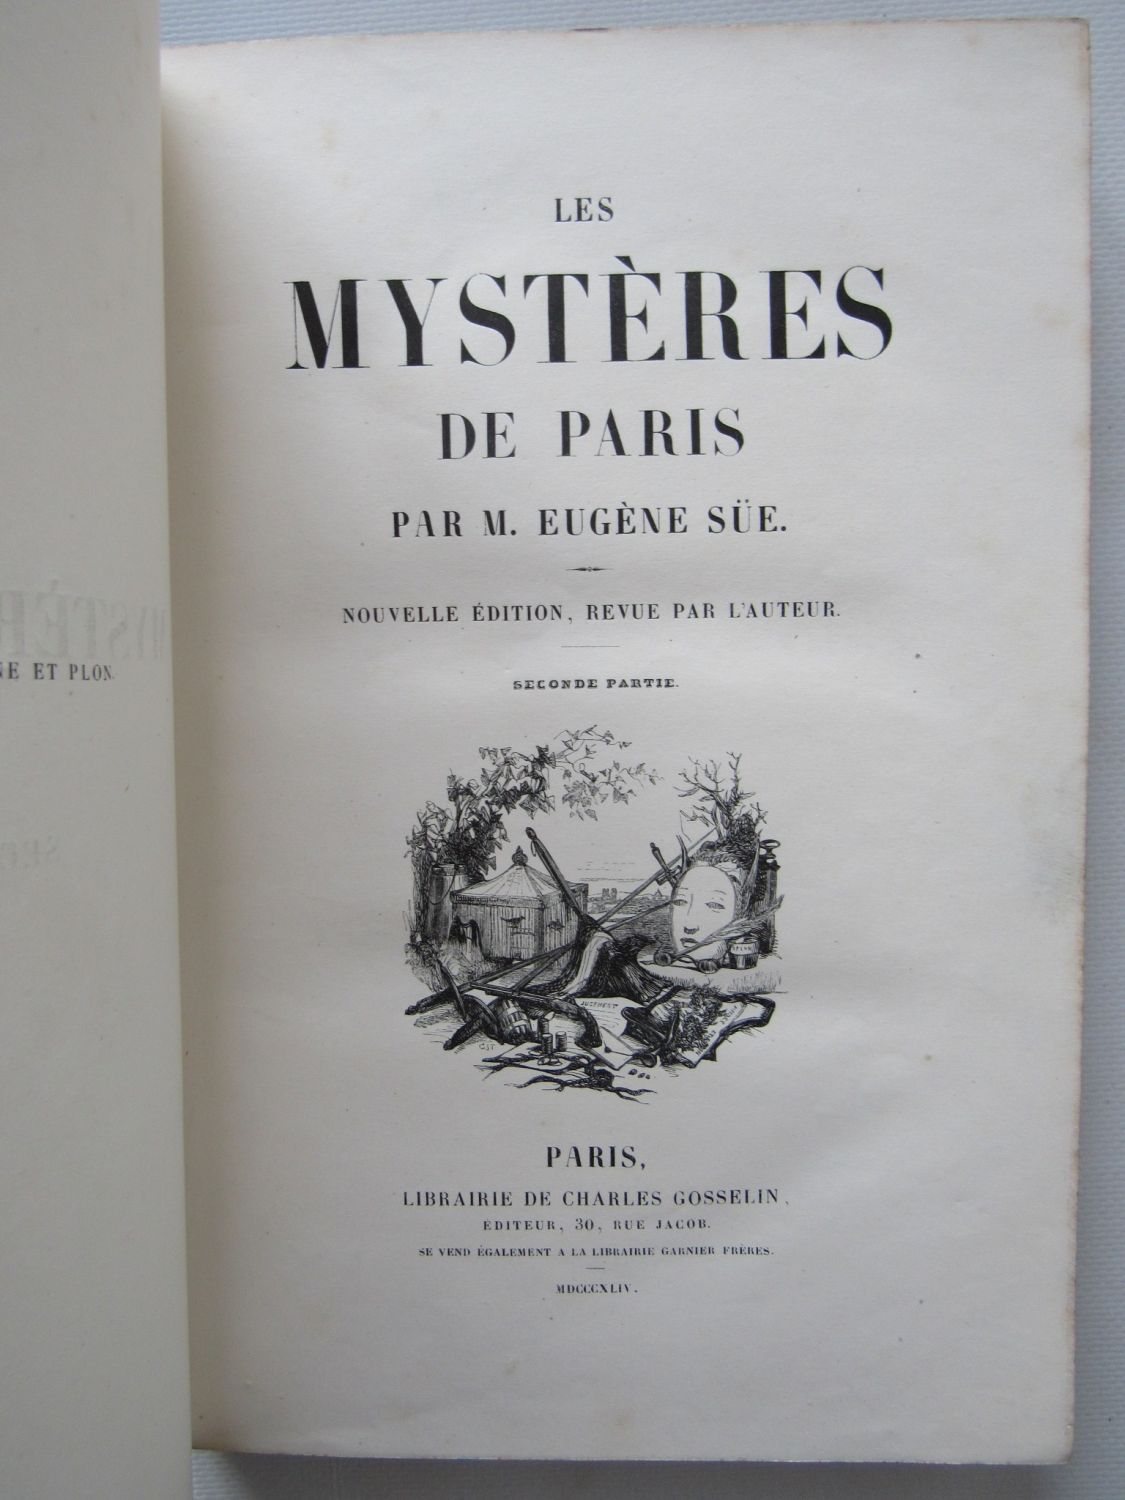 Les Mystères templiers - Charpentier, Louis: 9782221003275 - AbeBooks